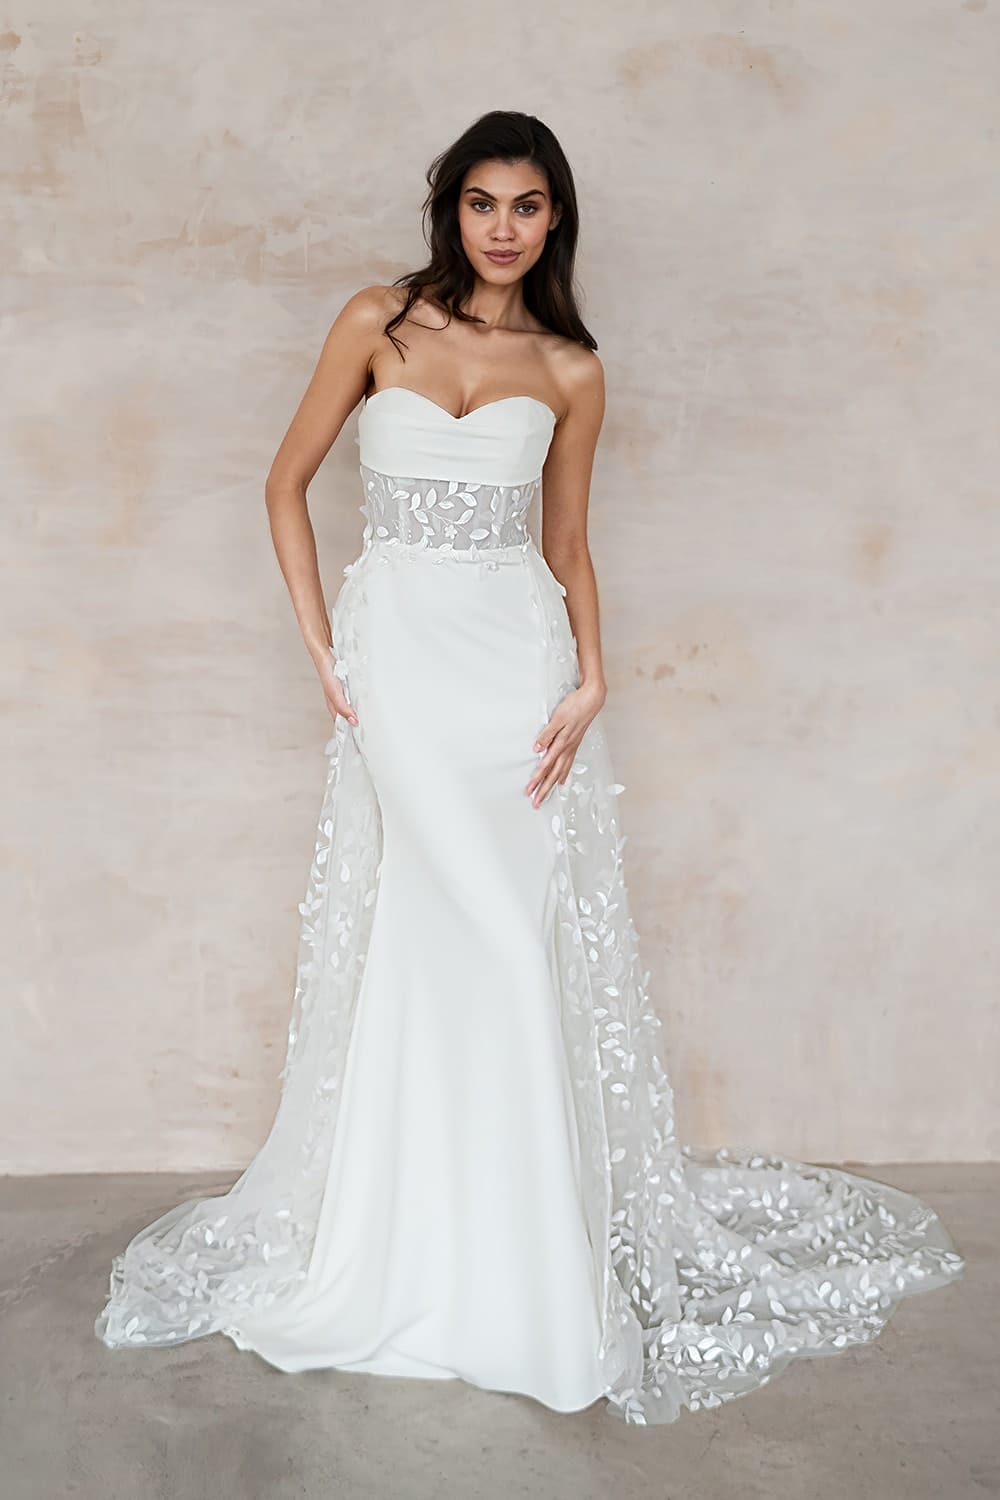 Sydney UK30312 Wedding Dresses Summer Wedding Dress With Overskirt 3 Love Spell Design